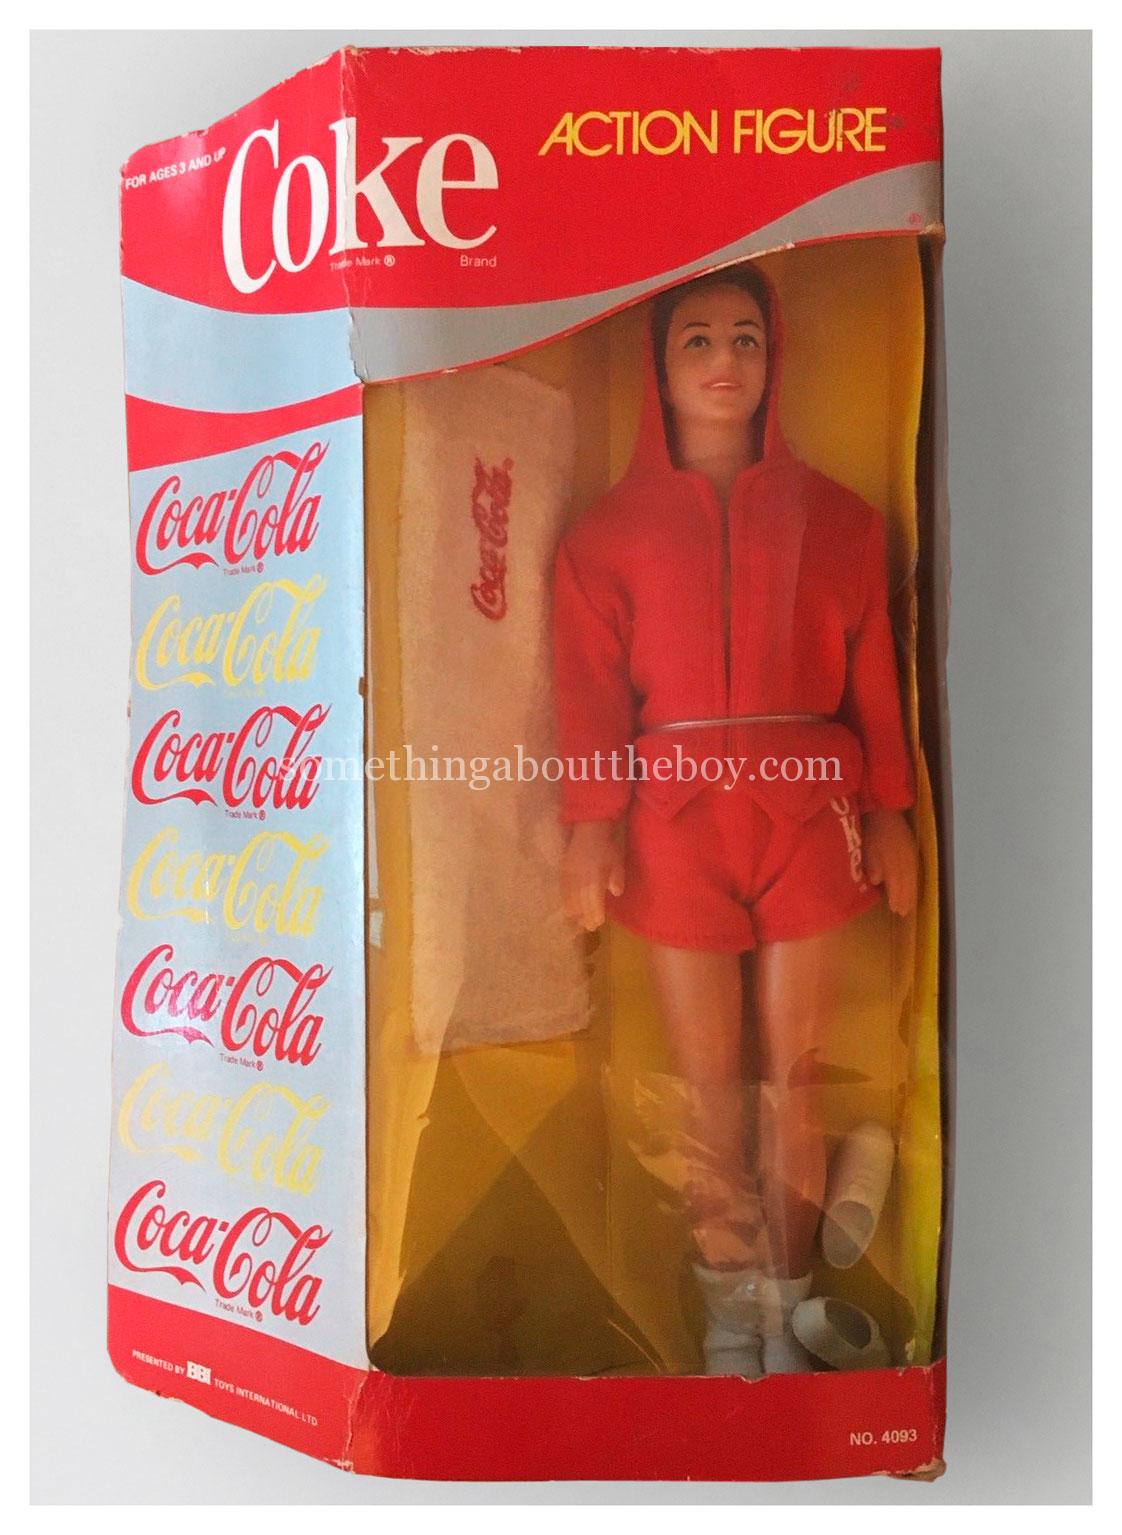 1986 Coke Action Figure